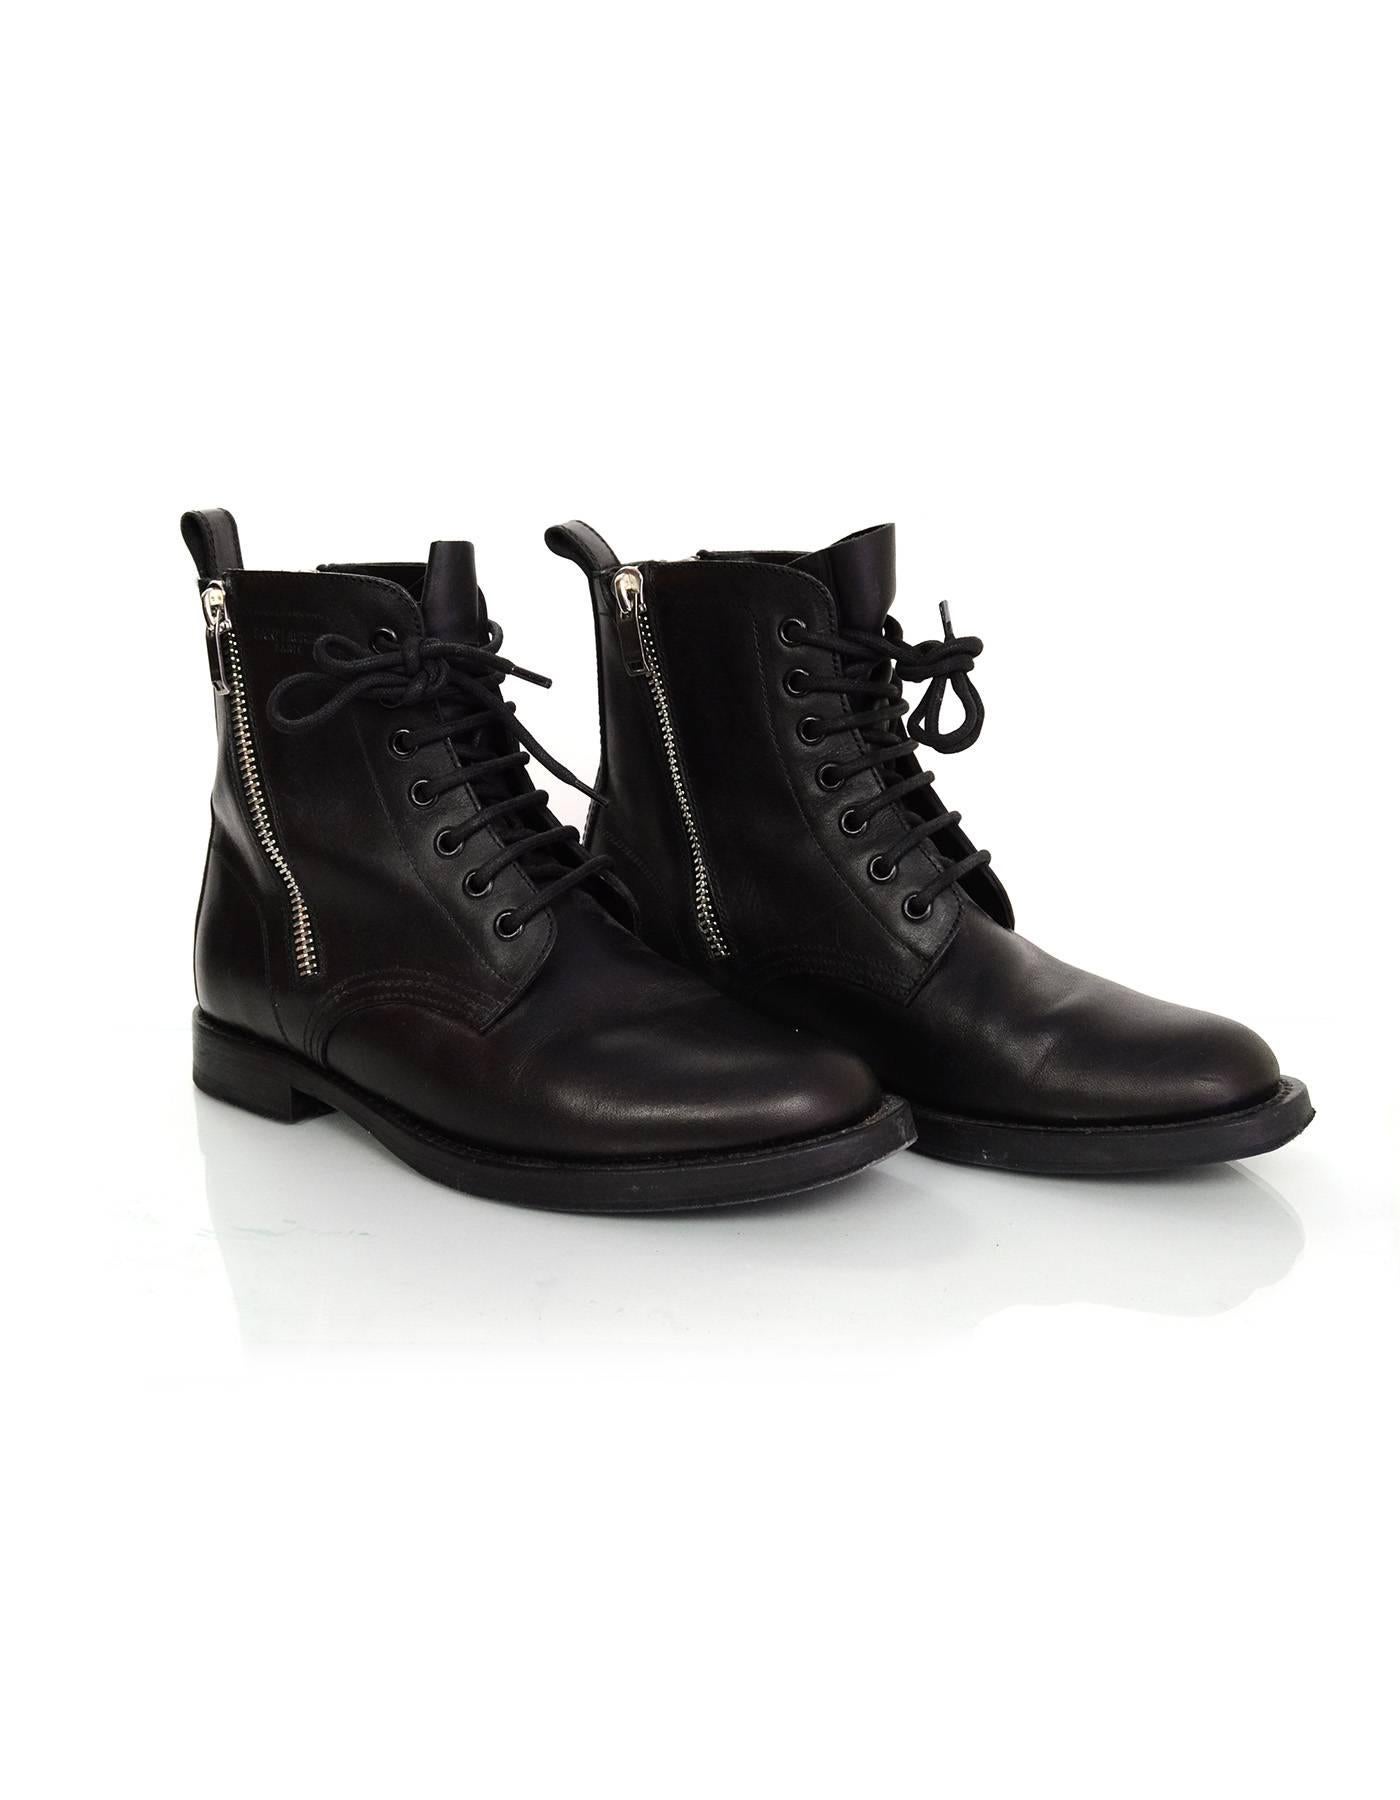 Saint Laurent Black Leather Combat Ankle Boots Sz 38.5 rt. $1, 295 1